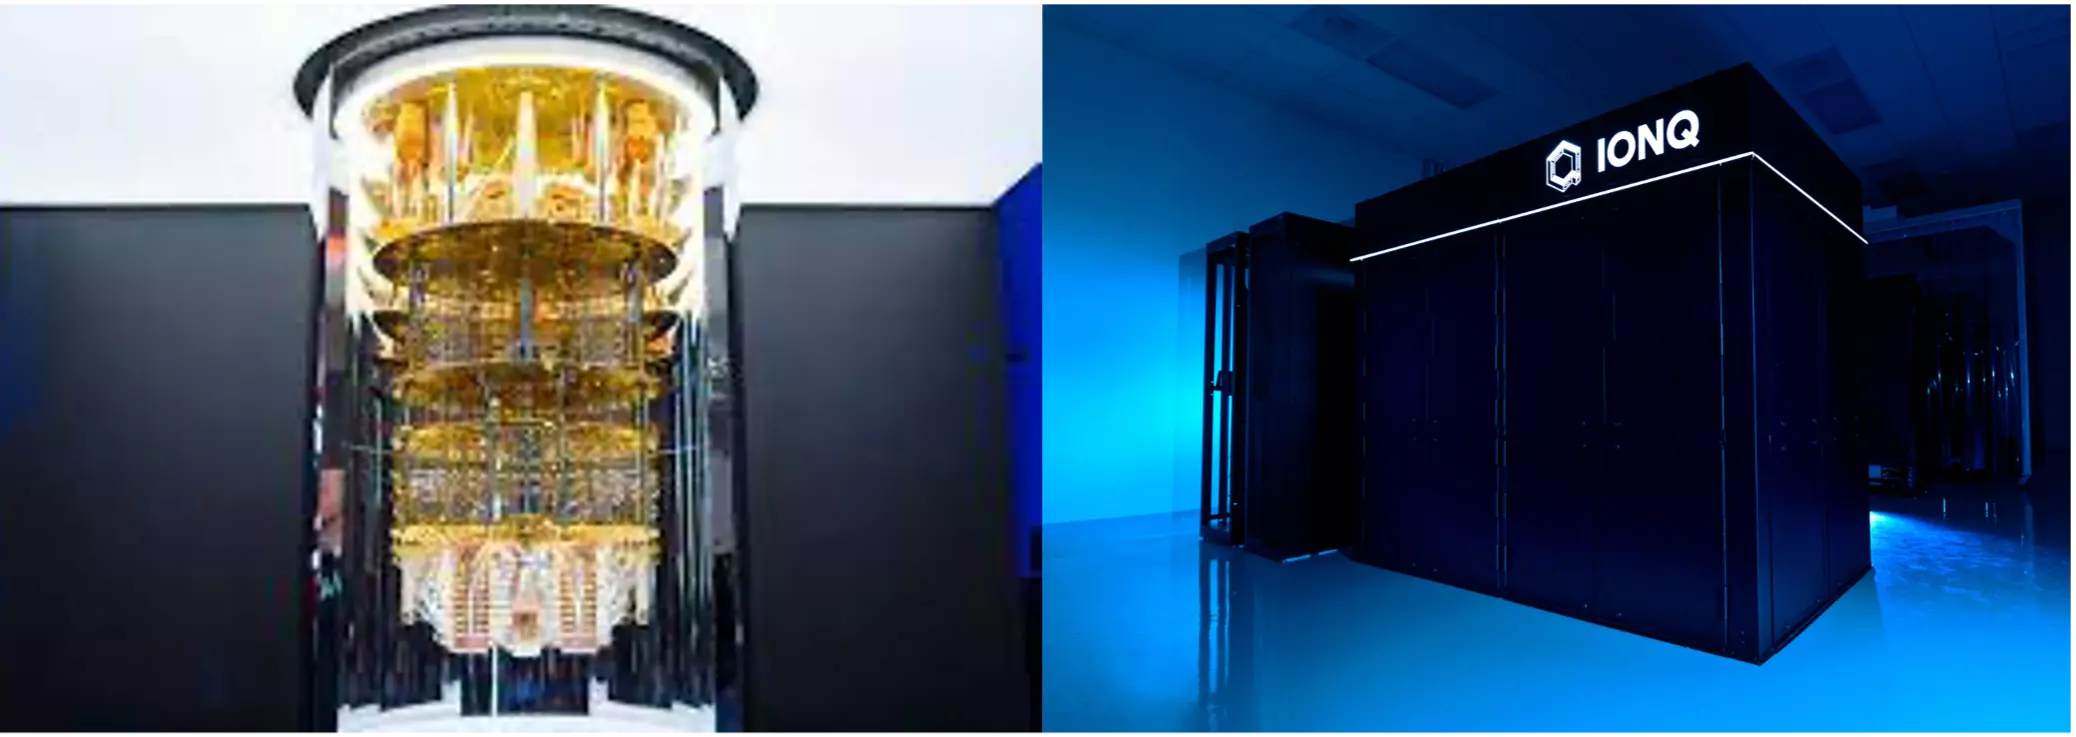 Links: IBM Quantum Maschine, rechts: IonQ Quantumcomputer (Quelle: QuantumBasel)